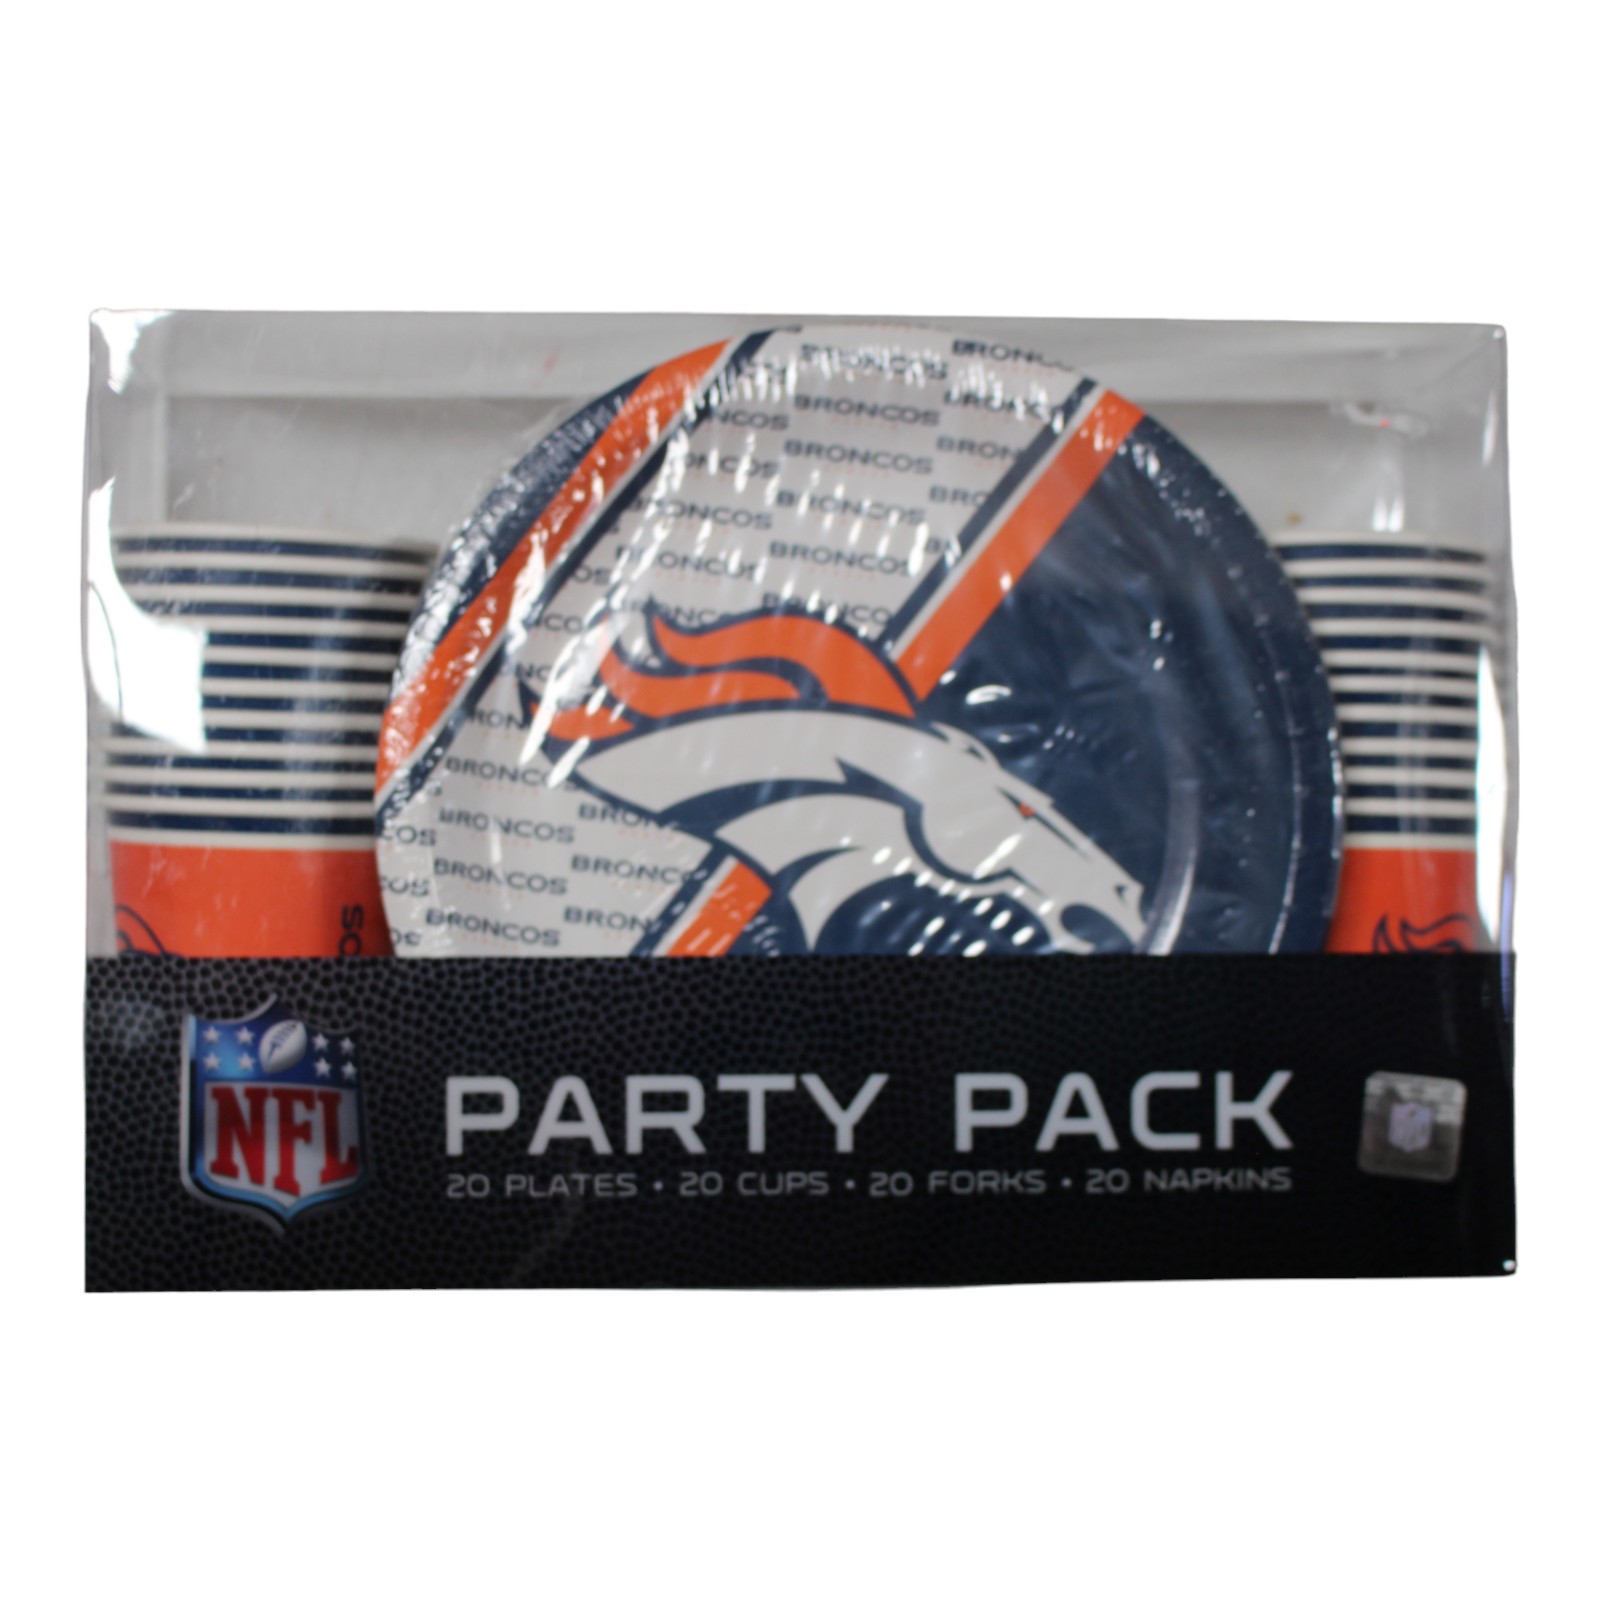 Denver Broncos Party Pack - Plates, Cups, Forks, Napkins